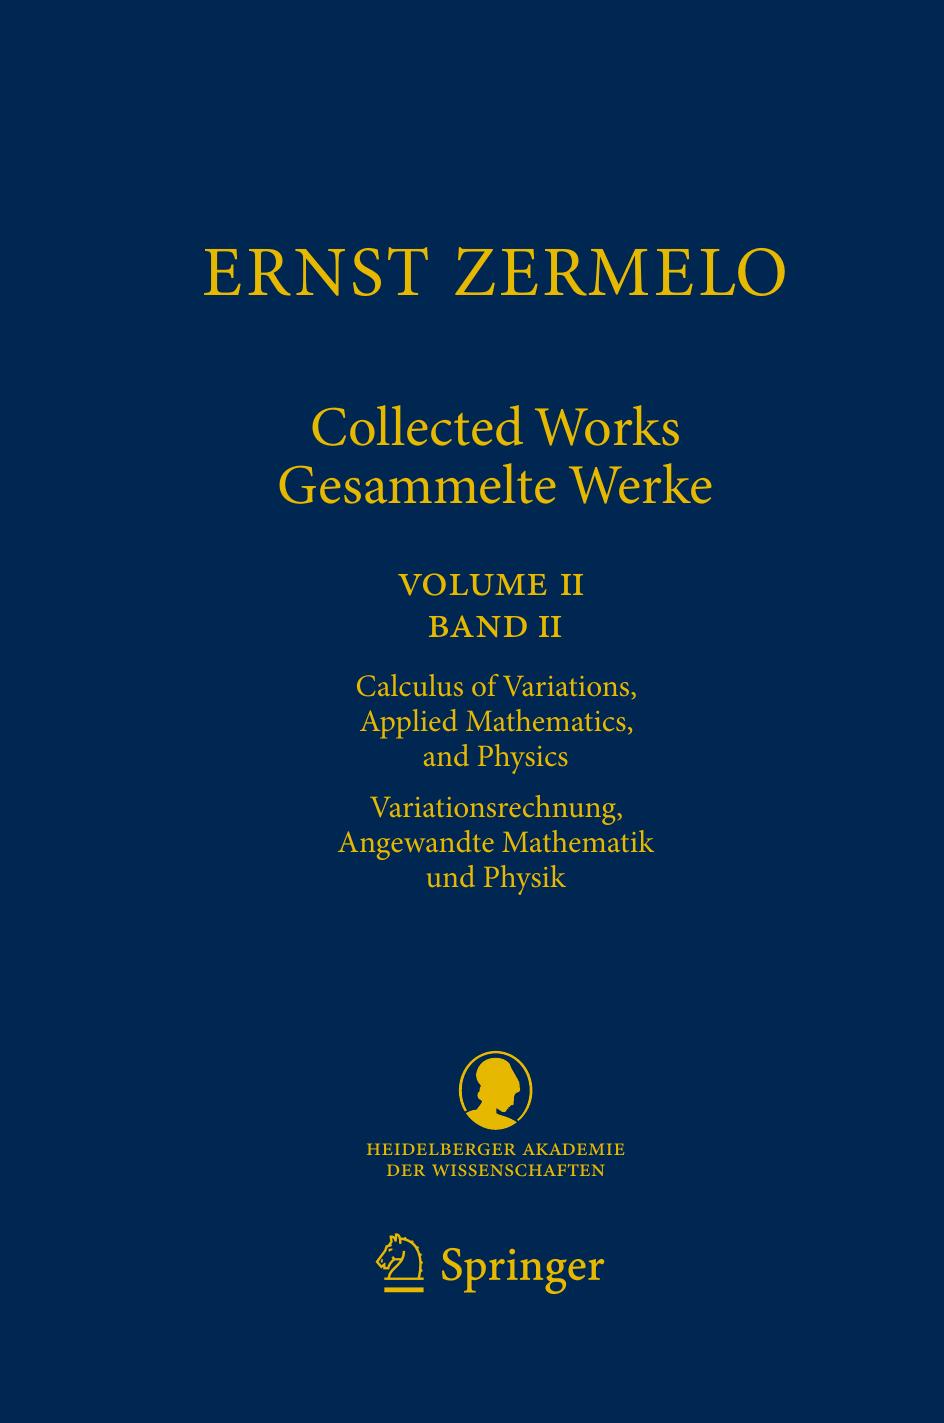 Ernst Zermelo - Collected WorksGesammelte Werke II Volume IIBand II